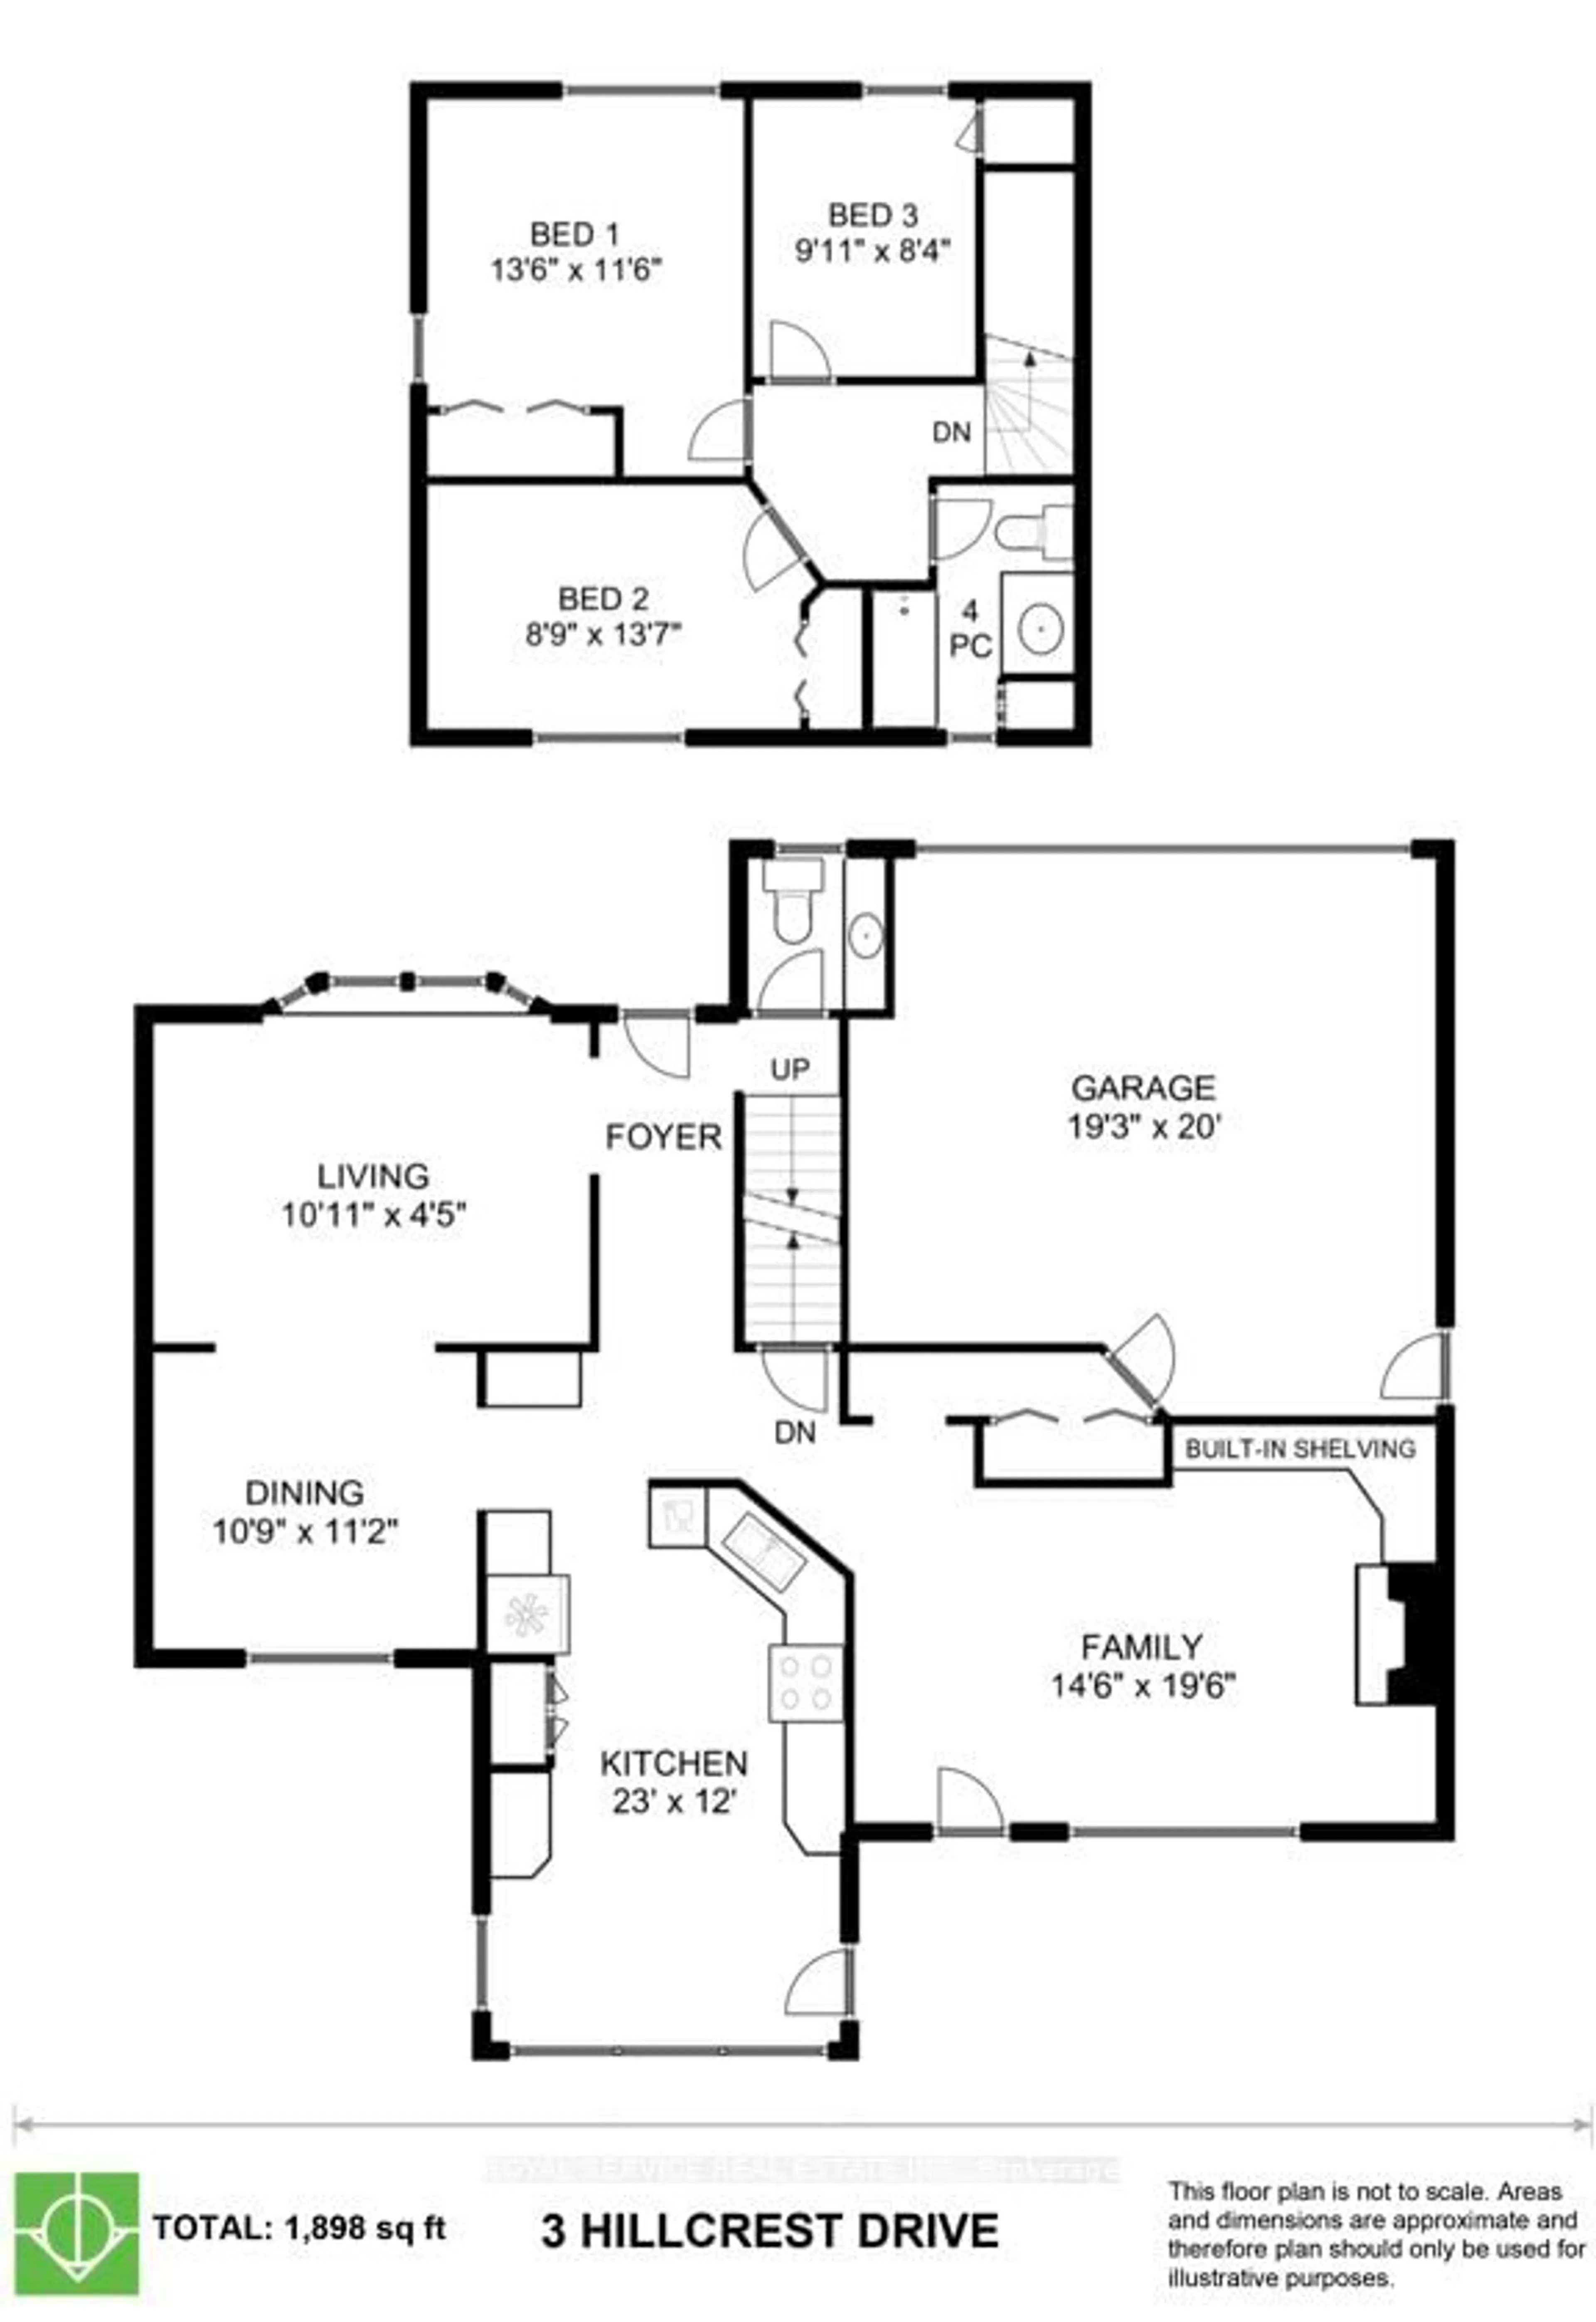 Floor plan for 3 Hillcrest Dr, Port Hope Ontario L1A 1Z7